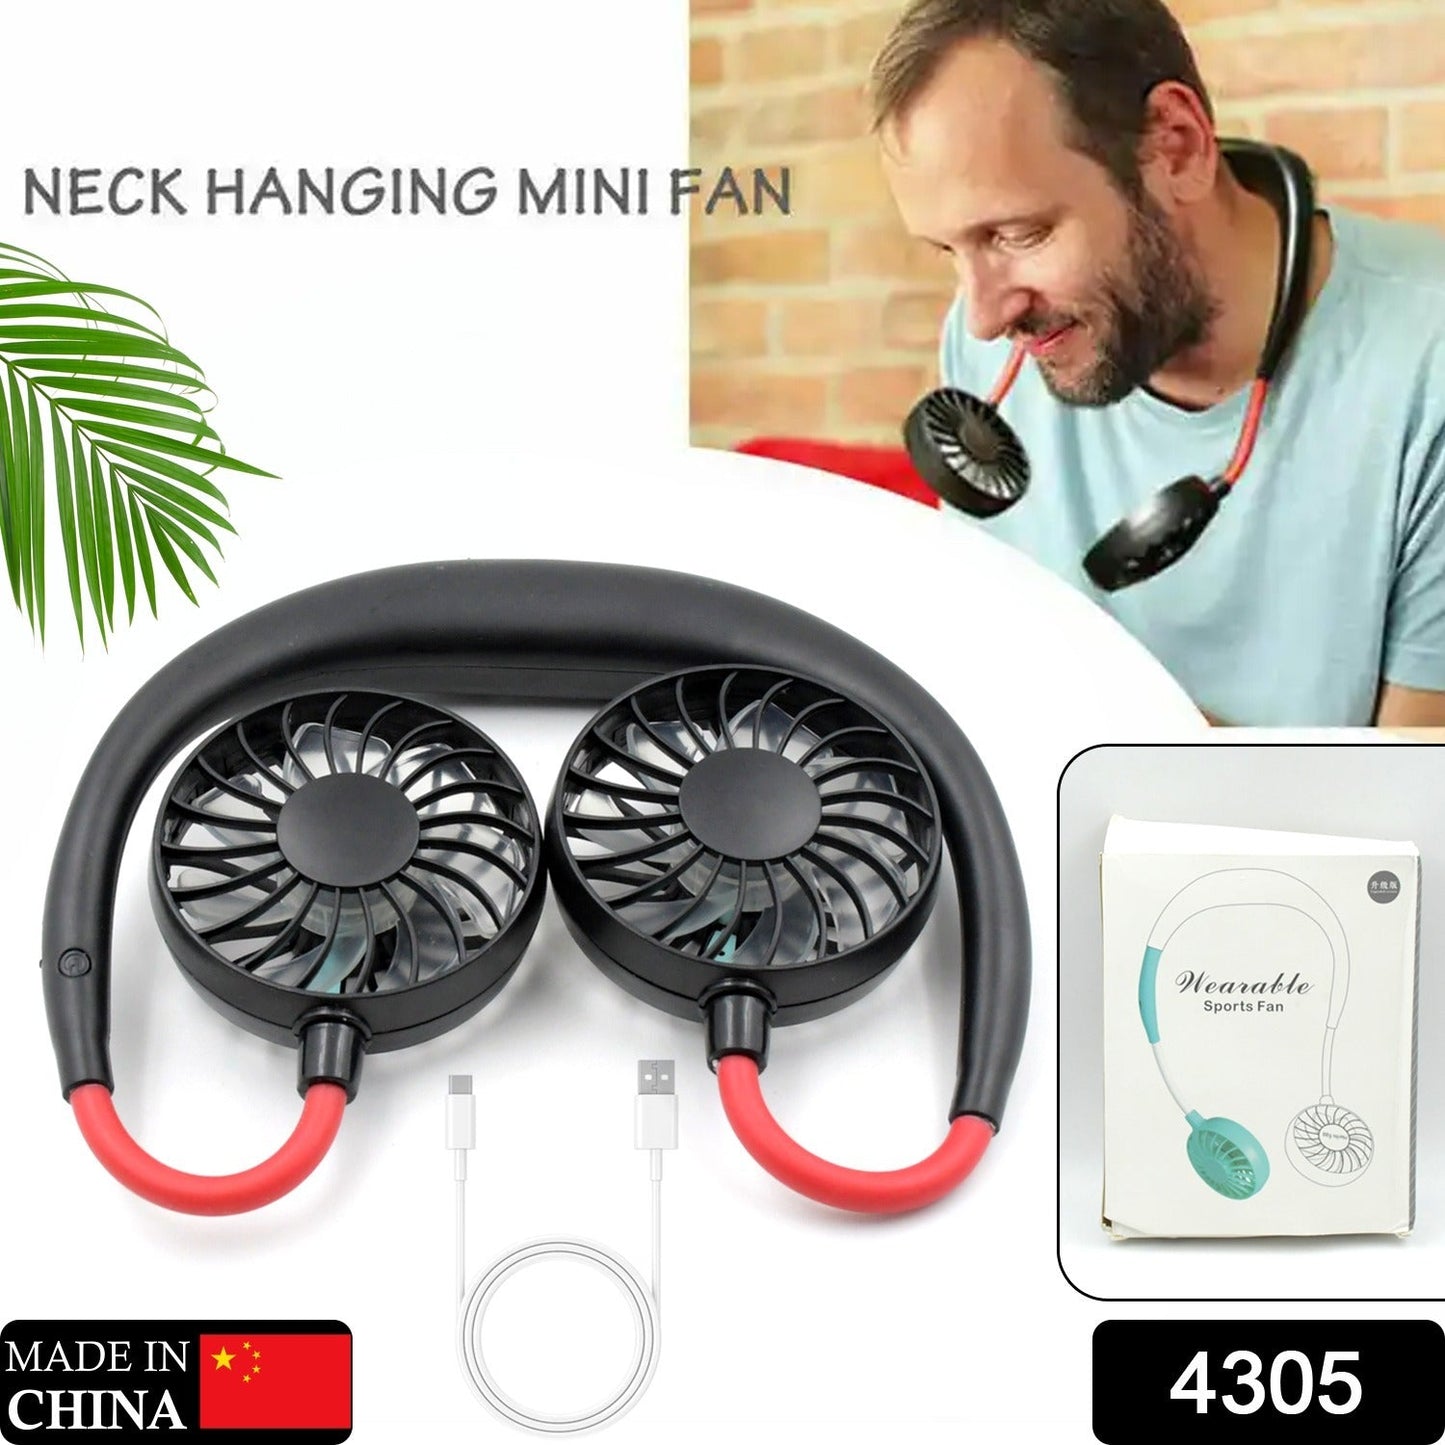 4305 Hand Free Personal Fan - Portable USB Battery Rechargeable Mini Fan - Headphone Design Wearable Neckband Fan Necklance Fan Cooler Fan for Home, Sport, Camping, Beach, Travel, Office